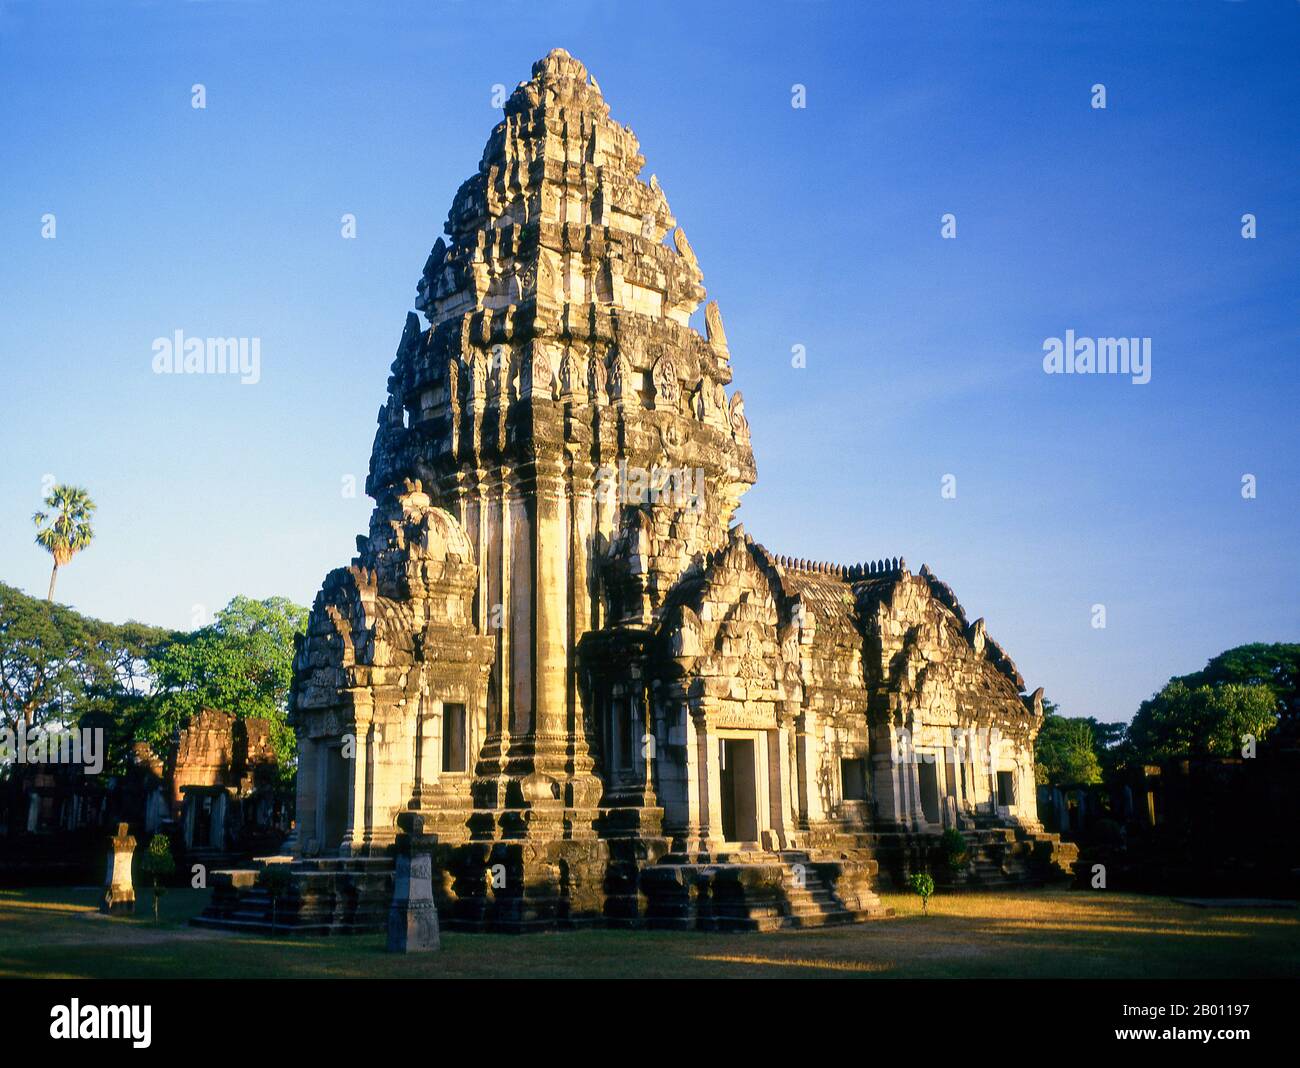 Thailand: Zentralheiligtum, Prasat hin Phimai, Phimai Historical Park, Nakhon Ratchasima Provinz. Phimai stammt aus dem 11. Und 12. Jahrhundert und war ein wichtiger buddhistischer Tempel und eine Stadt im Khmer-Reich. Der Komplex in Phimai stammt ursprünglich aus der Regierungszeit von Surayavarman II (r. 1113 - 1150), während der ersten Hälfte des 12. Jahrhunderts u.Z. Der Tempel wurde aus weißem, feinkörnigem Sandstein gebaut, im gleichen Stil wie Angkor Wat. Ebenso wie Angkor wurde auch Phimai zunächst dem Vishnu-Kult gewidmet. Der zentrale Turm des Heiligtums stammt aus dieser frühen Periode. Stockfoto